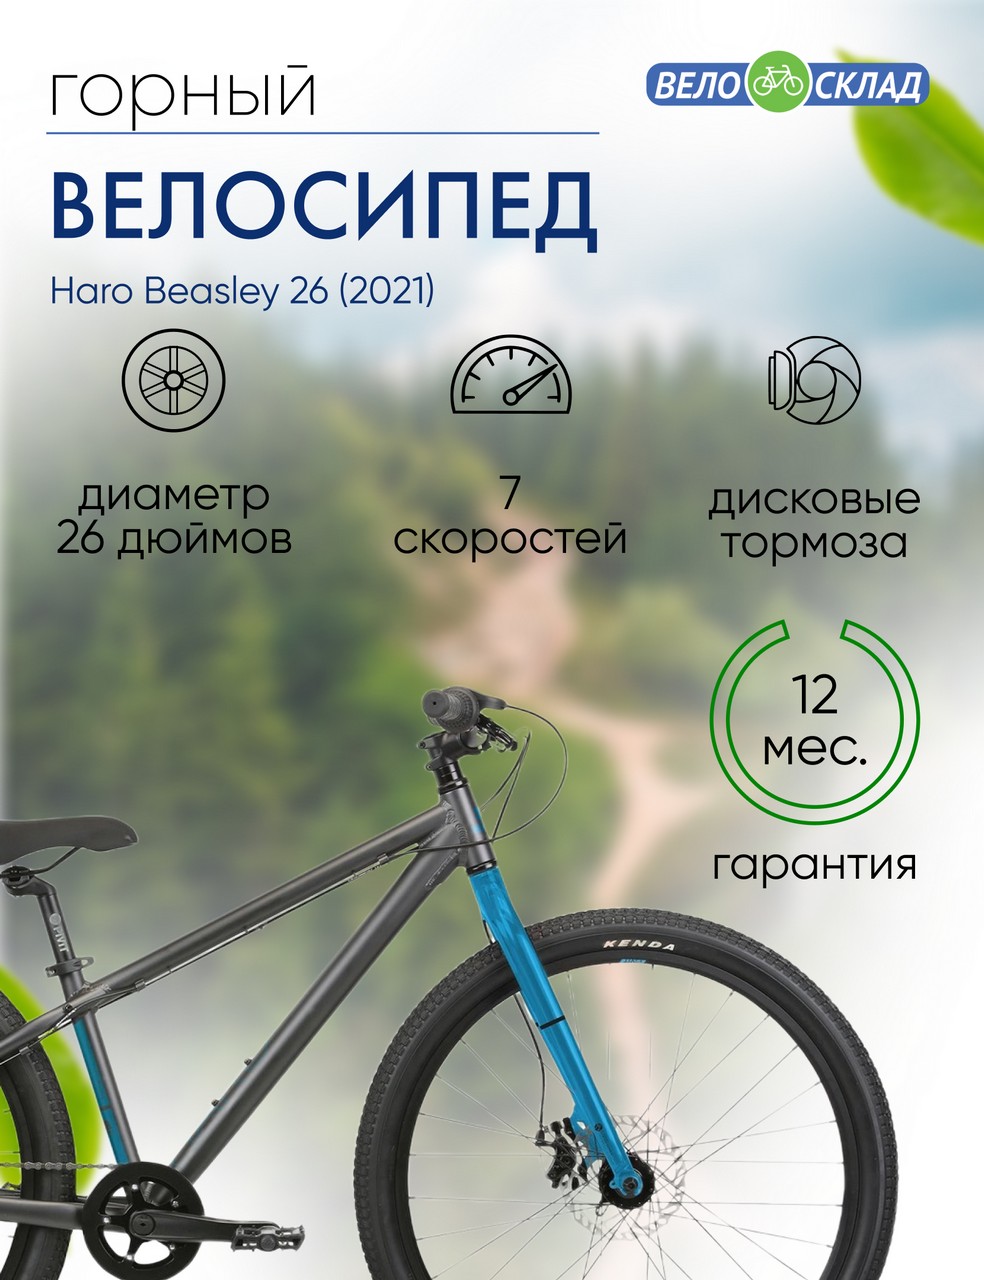 Подростковый велосипед Haro Beasley 26, год 2021, цвет Черный-Синий, ростовка 13